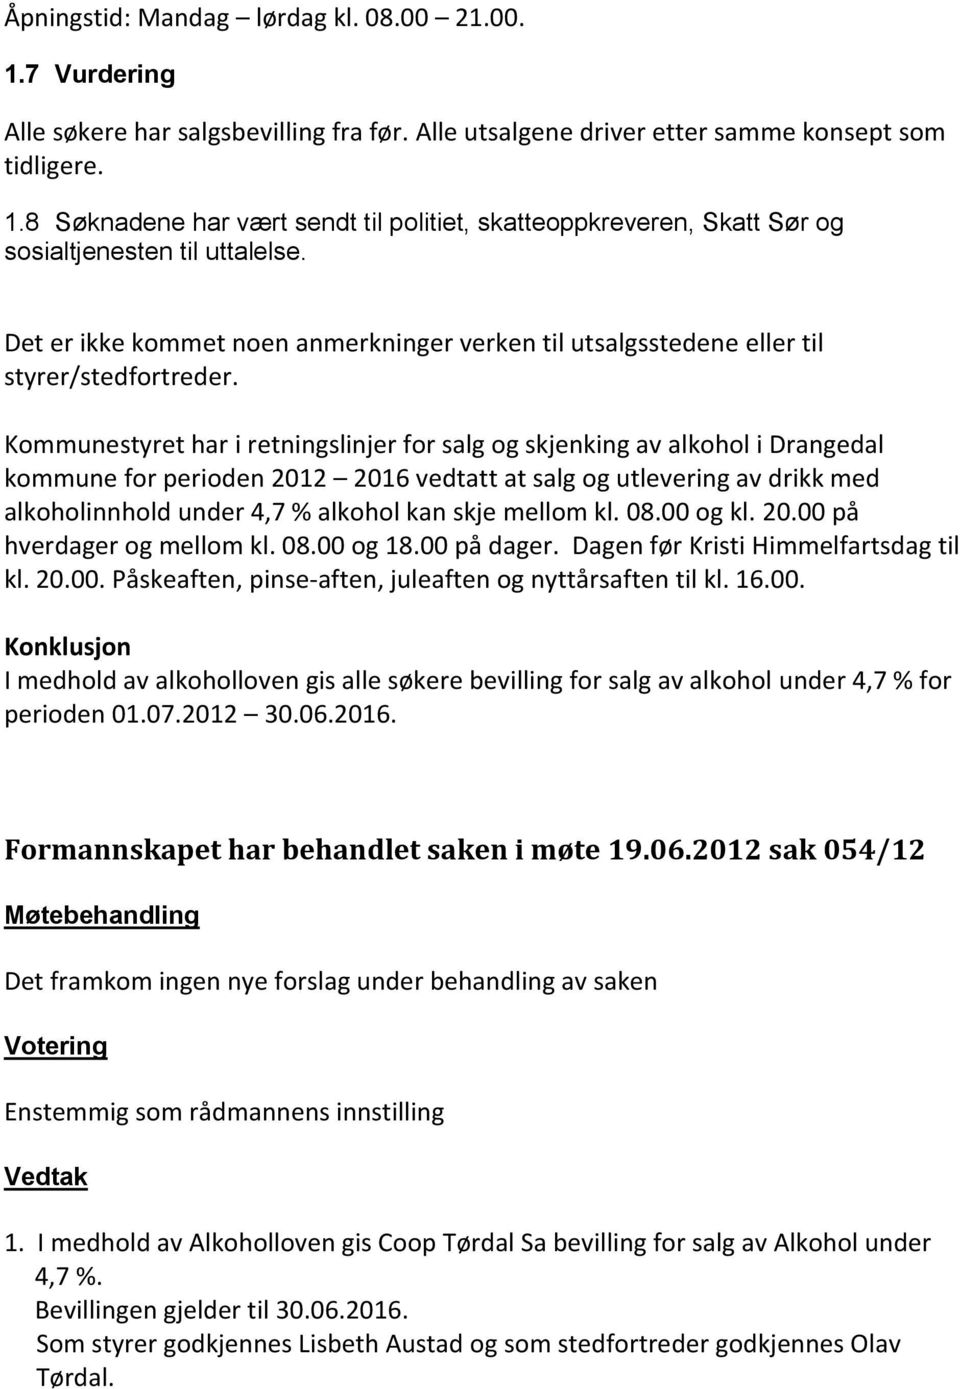 Kommunestyret har i retningslinjer for salg og skjenking av alkohol i Drangedal kommune for perioden 2012 2016 vedtatt at salg og utlevering av drikk med alkoholinnhold under 4,7 % alkohol kan skje